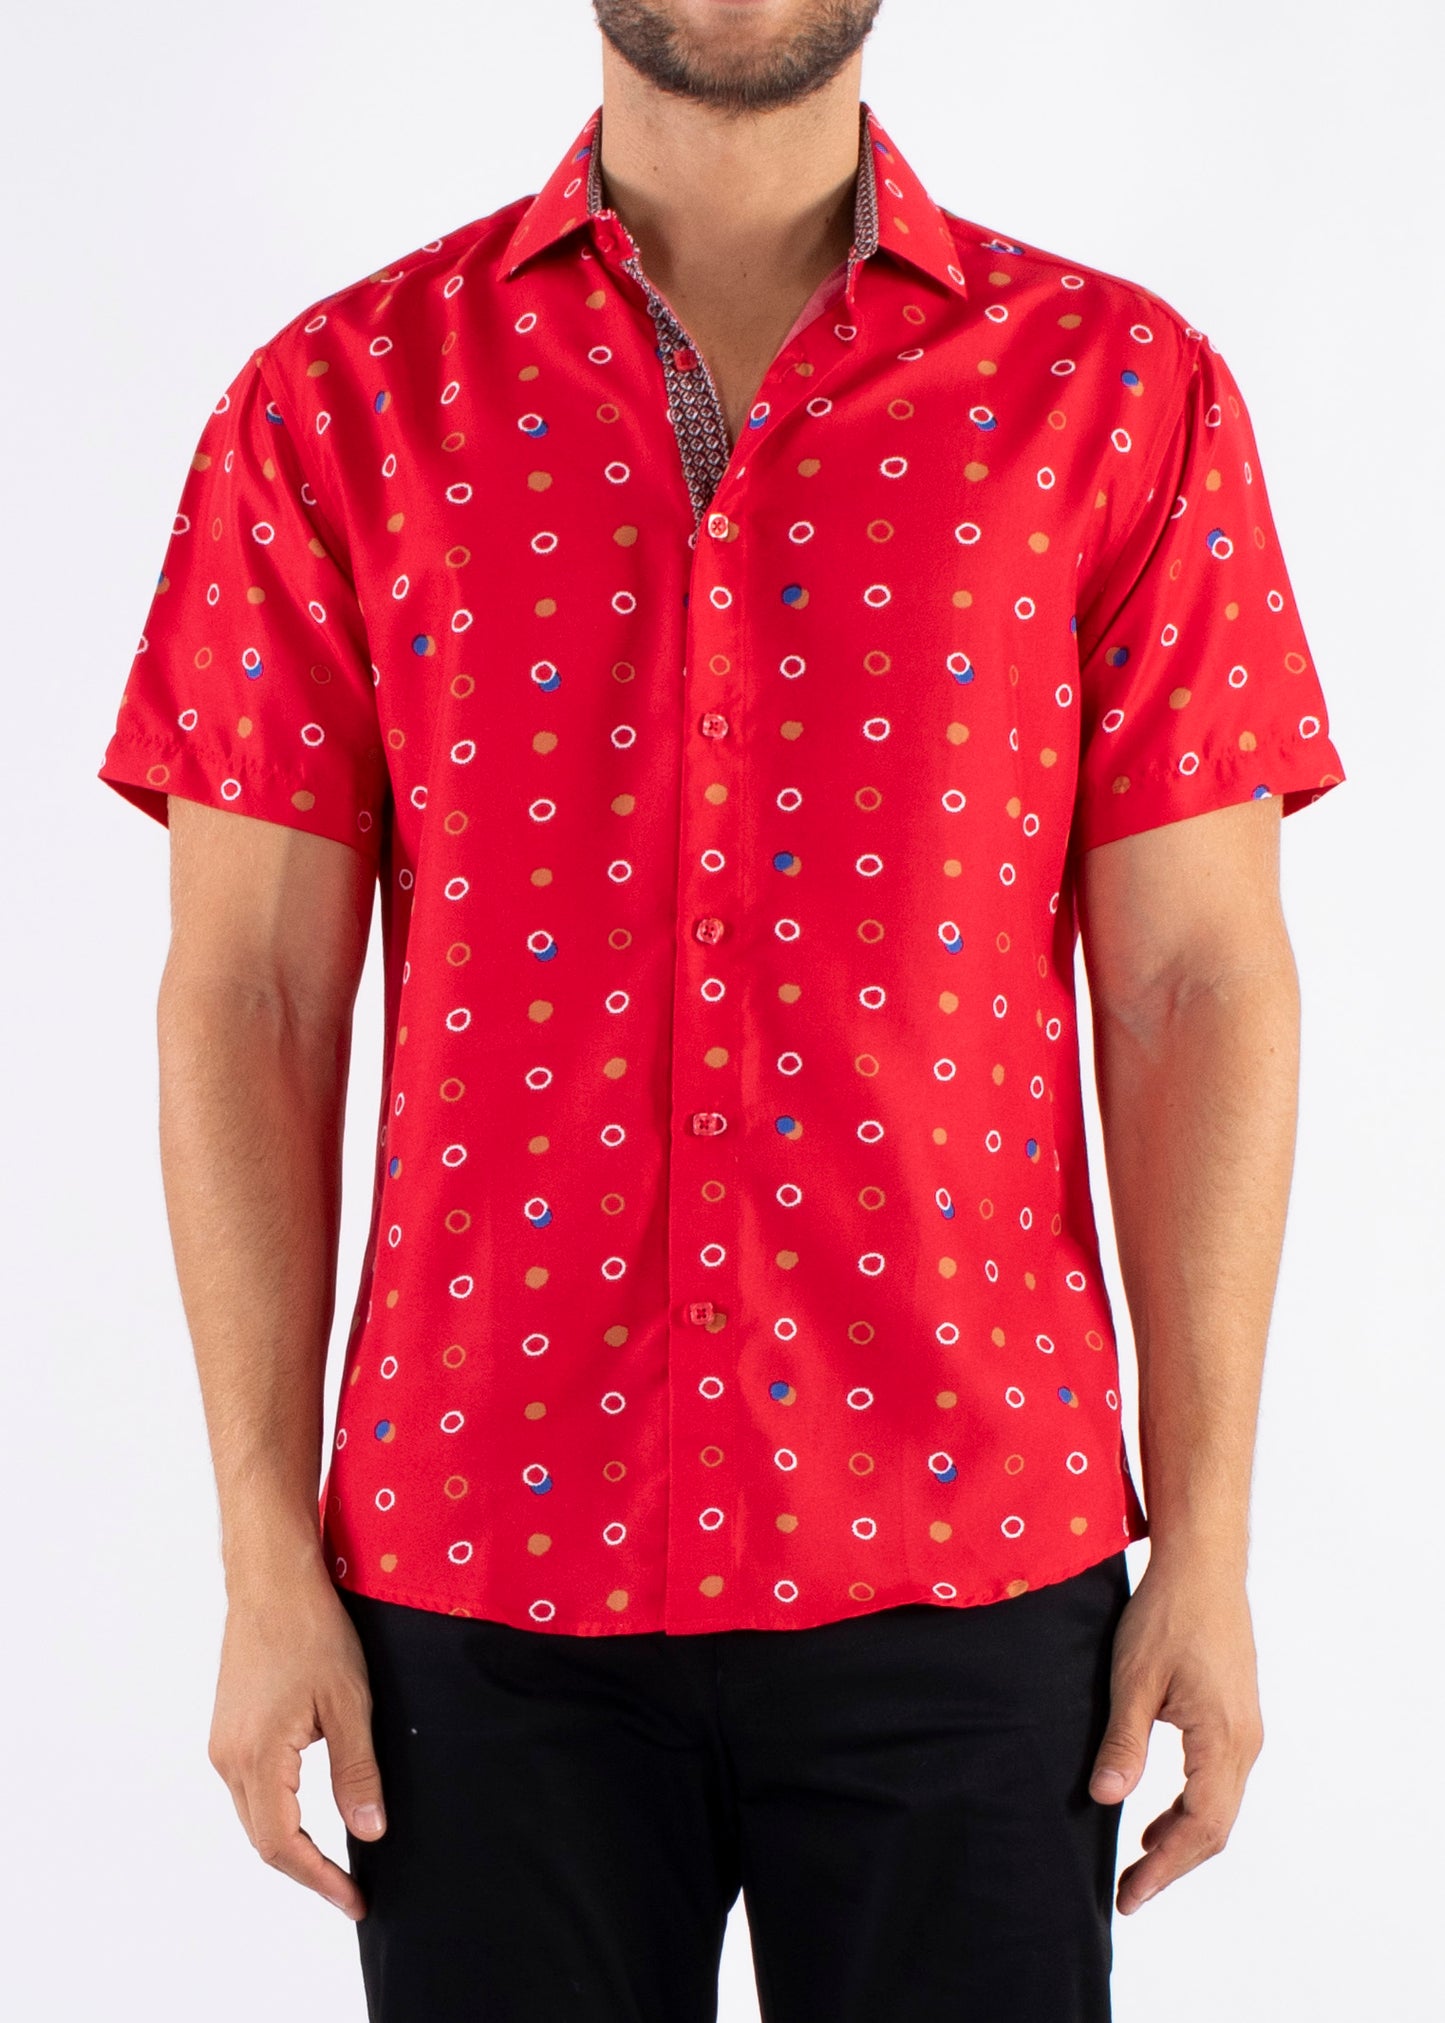 'CircleDots' - Button Up Short Sleeve Shirt